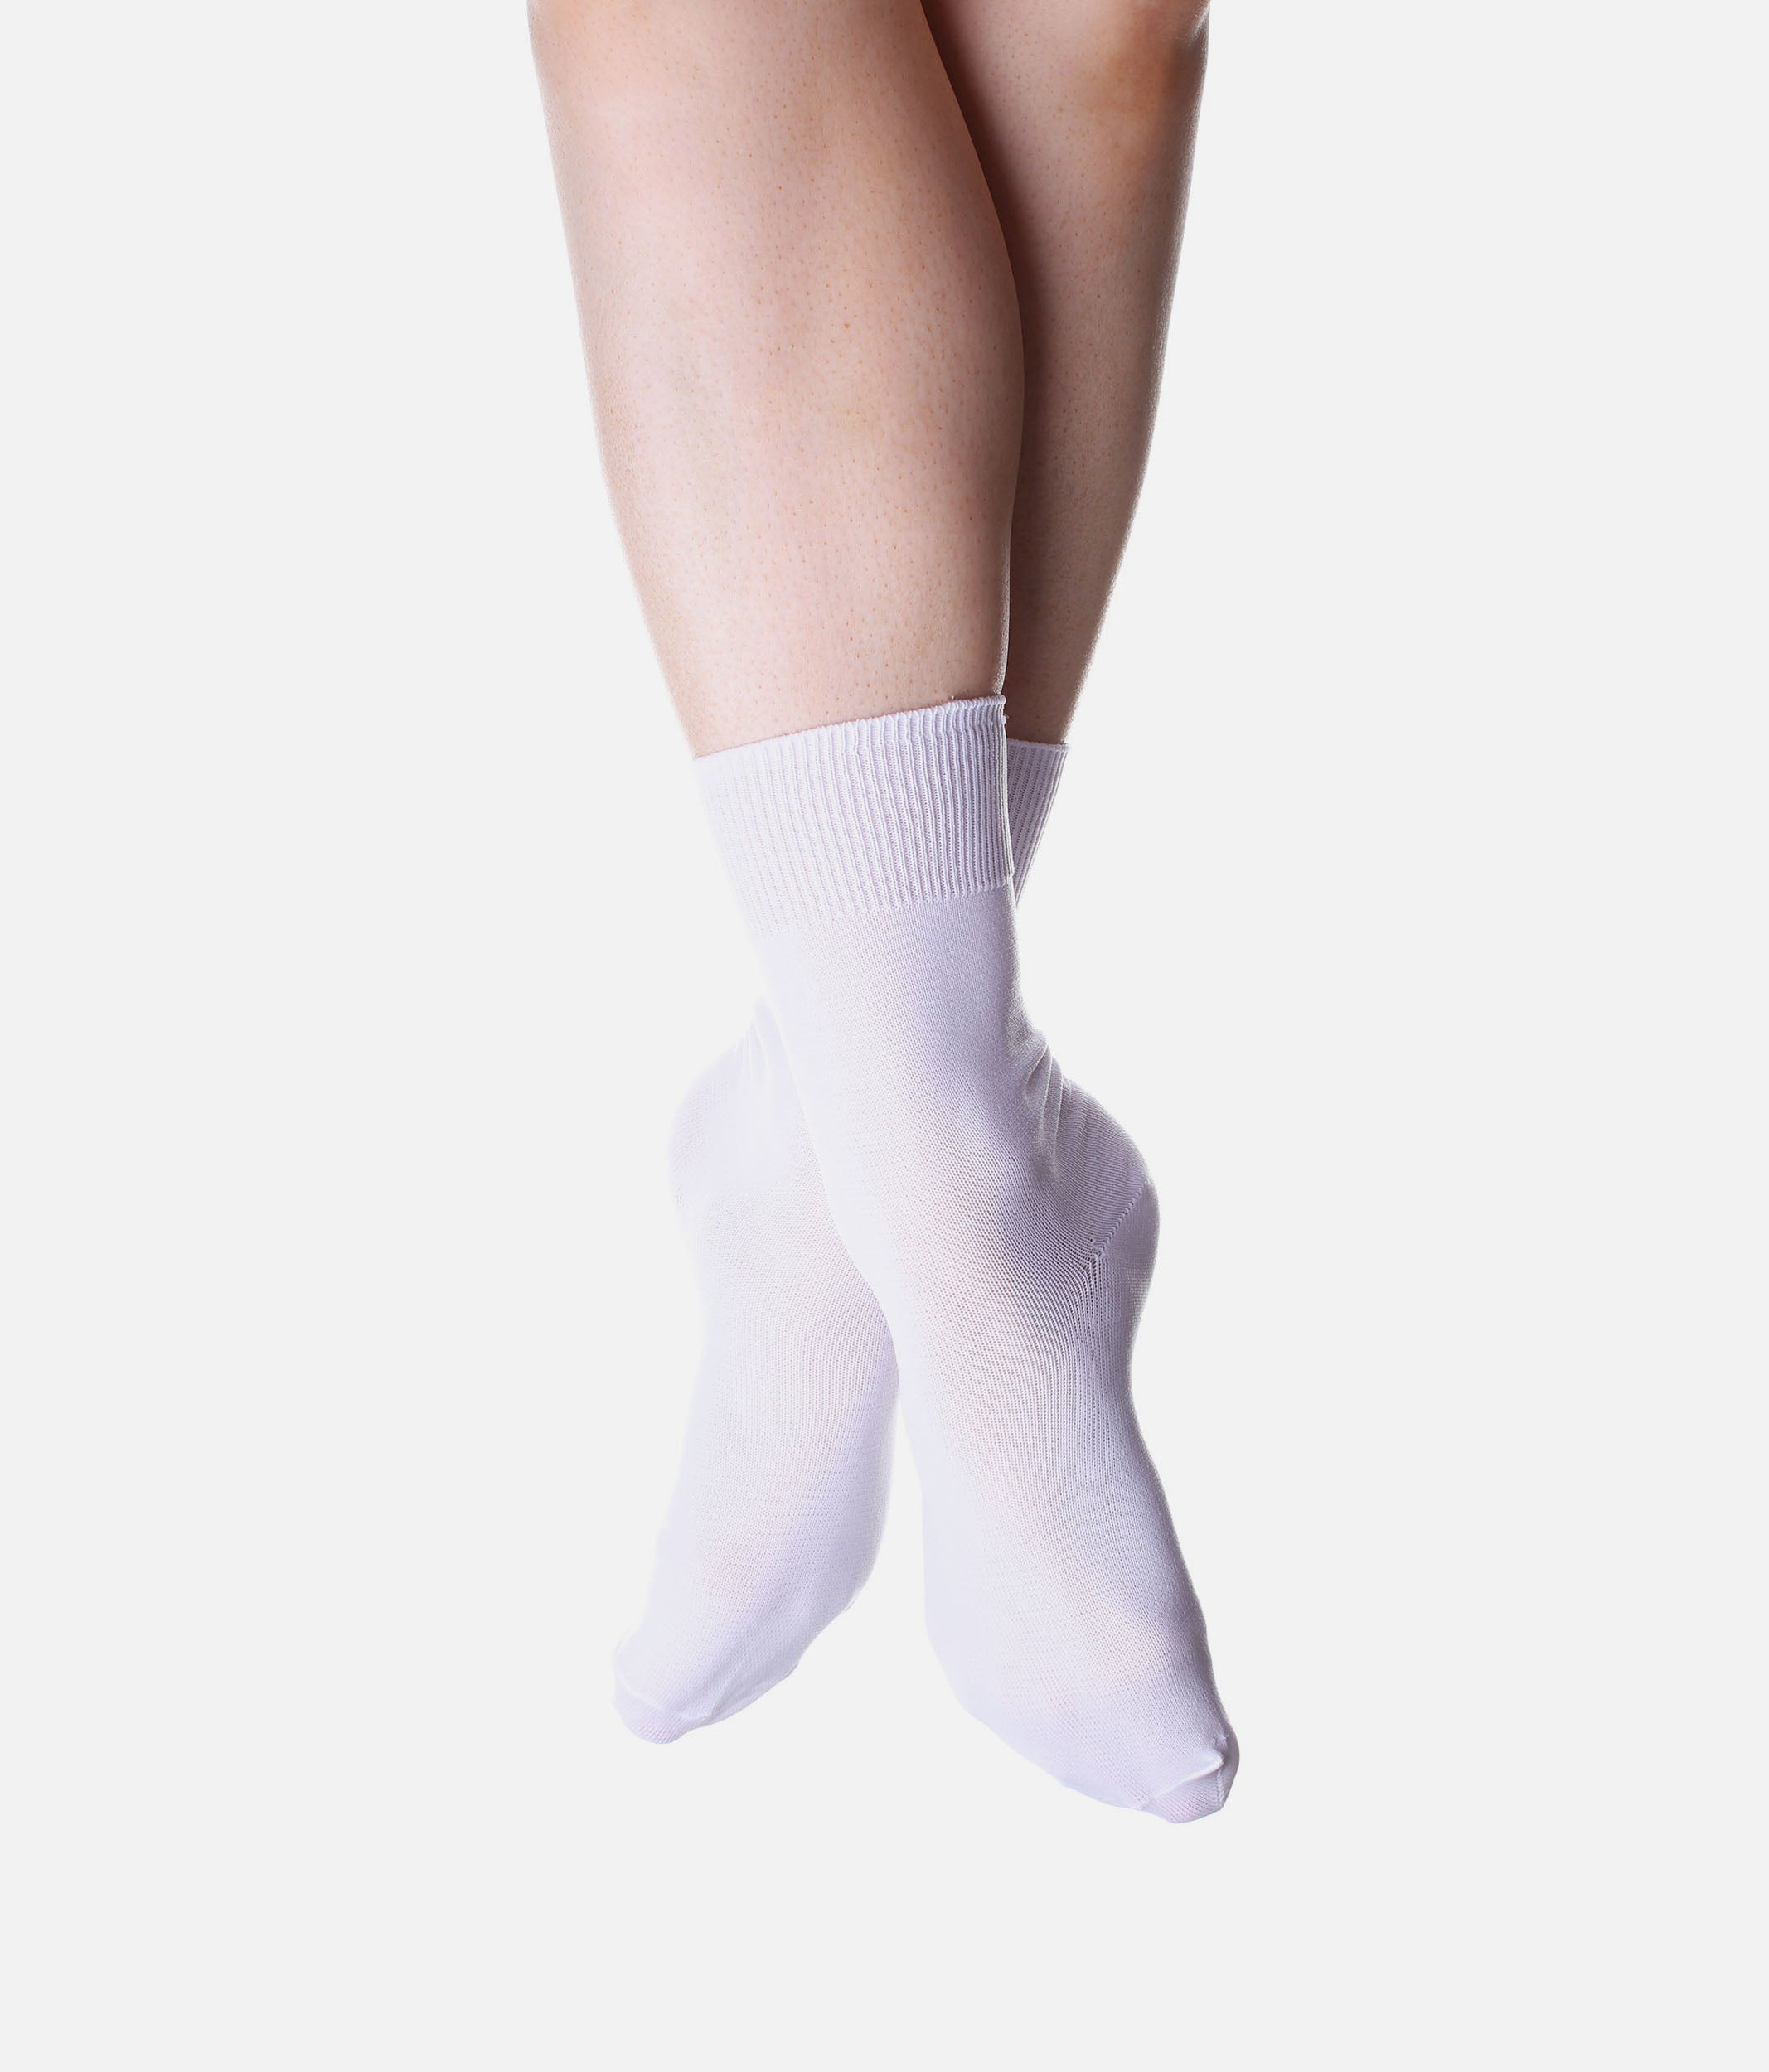 Irish Dance Socks - Because just any pair of white socks won't do.